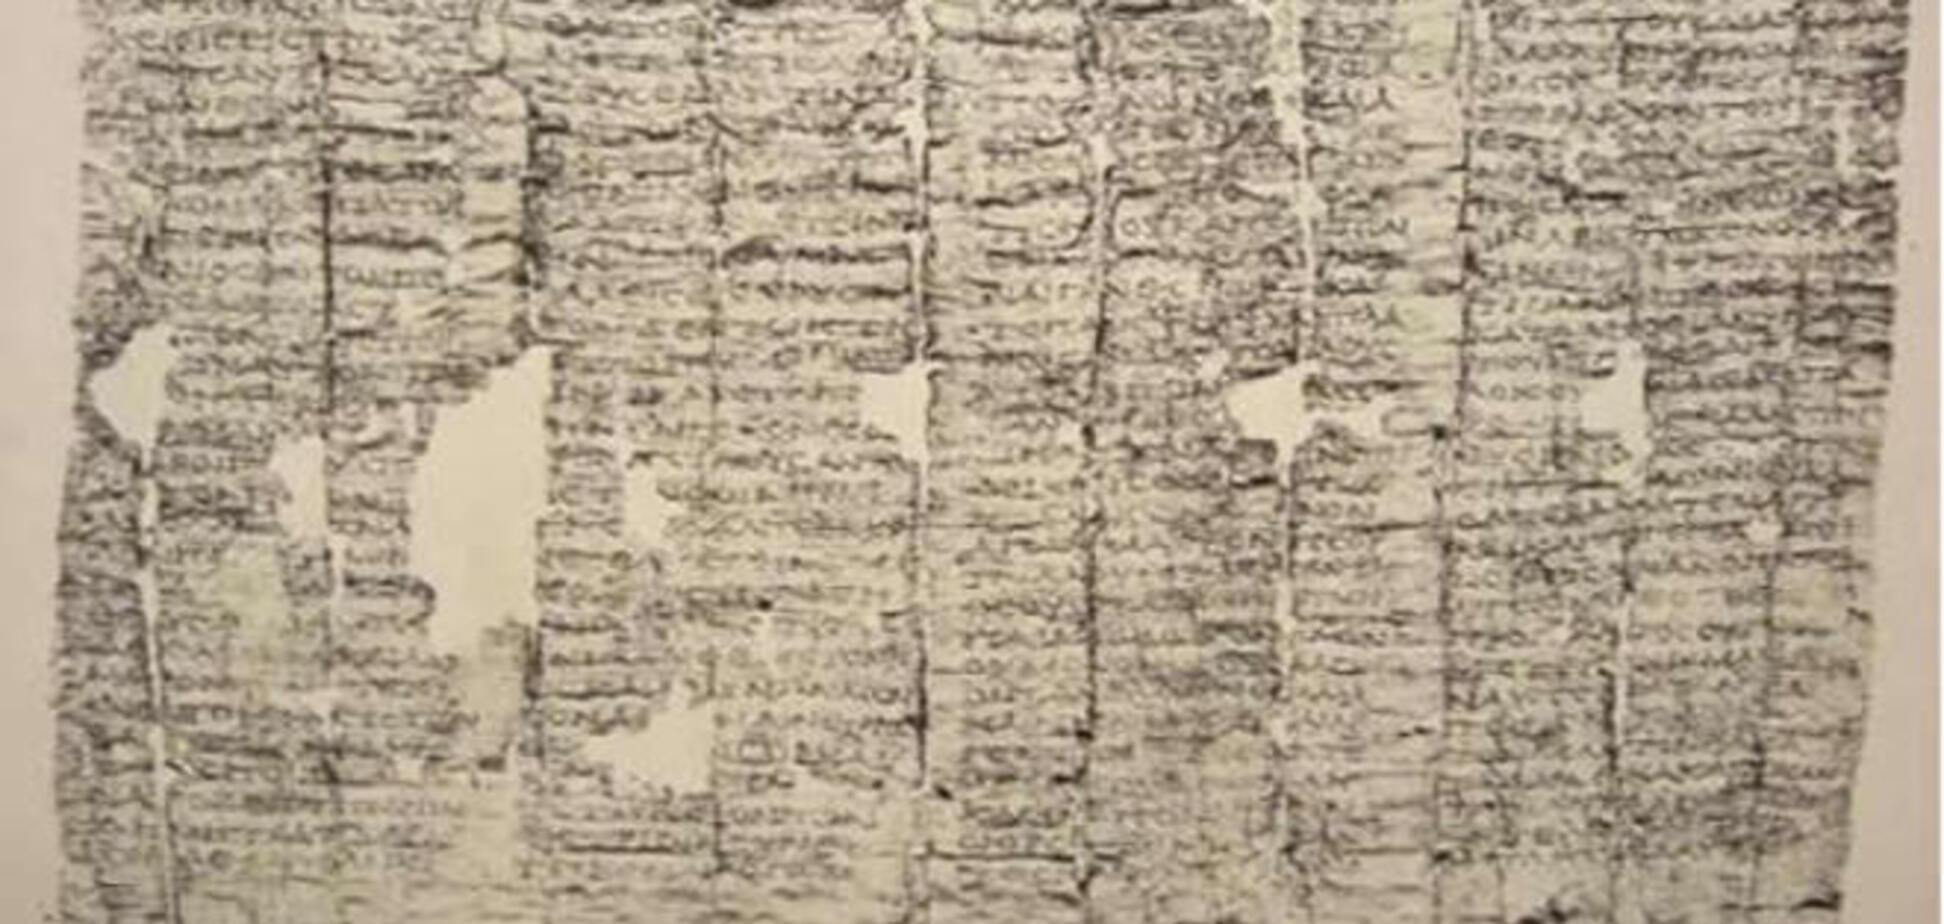 Ученые прочтут папирусы из Помпей при помощи рентгена